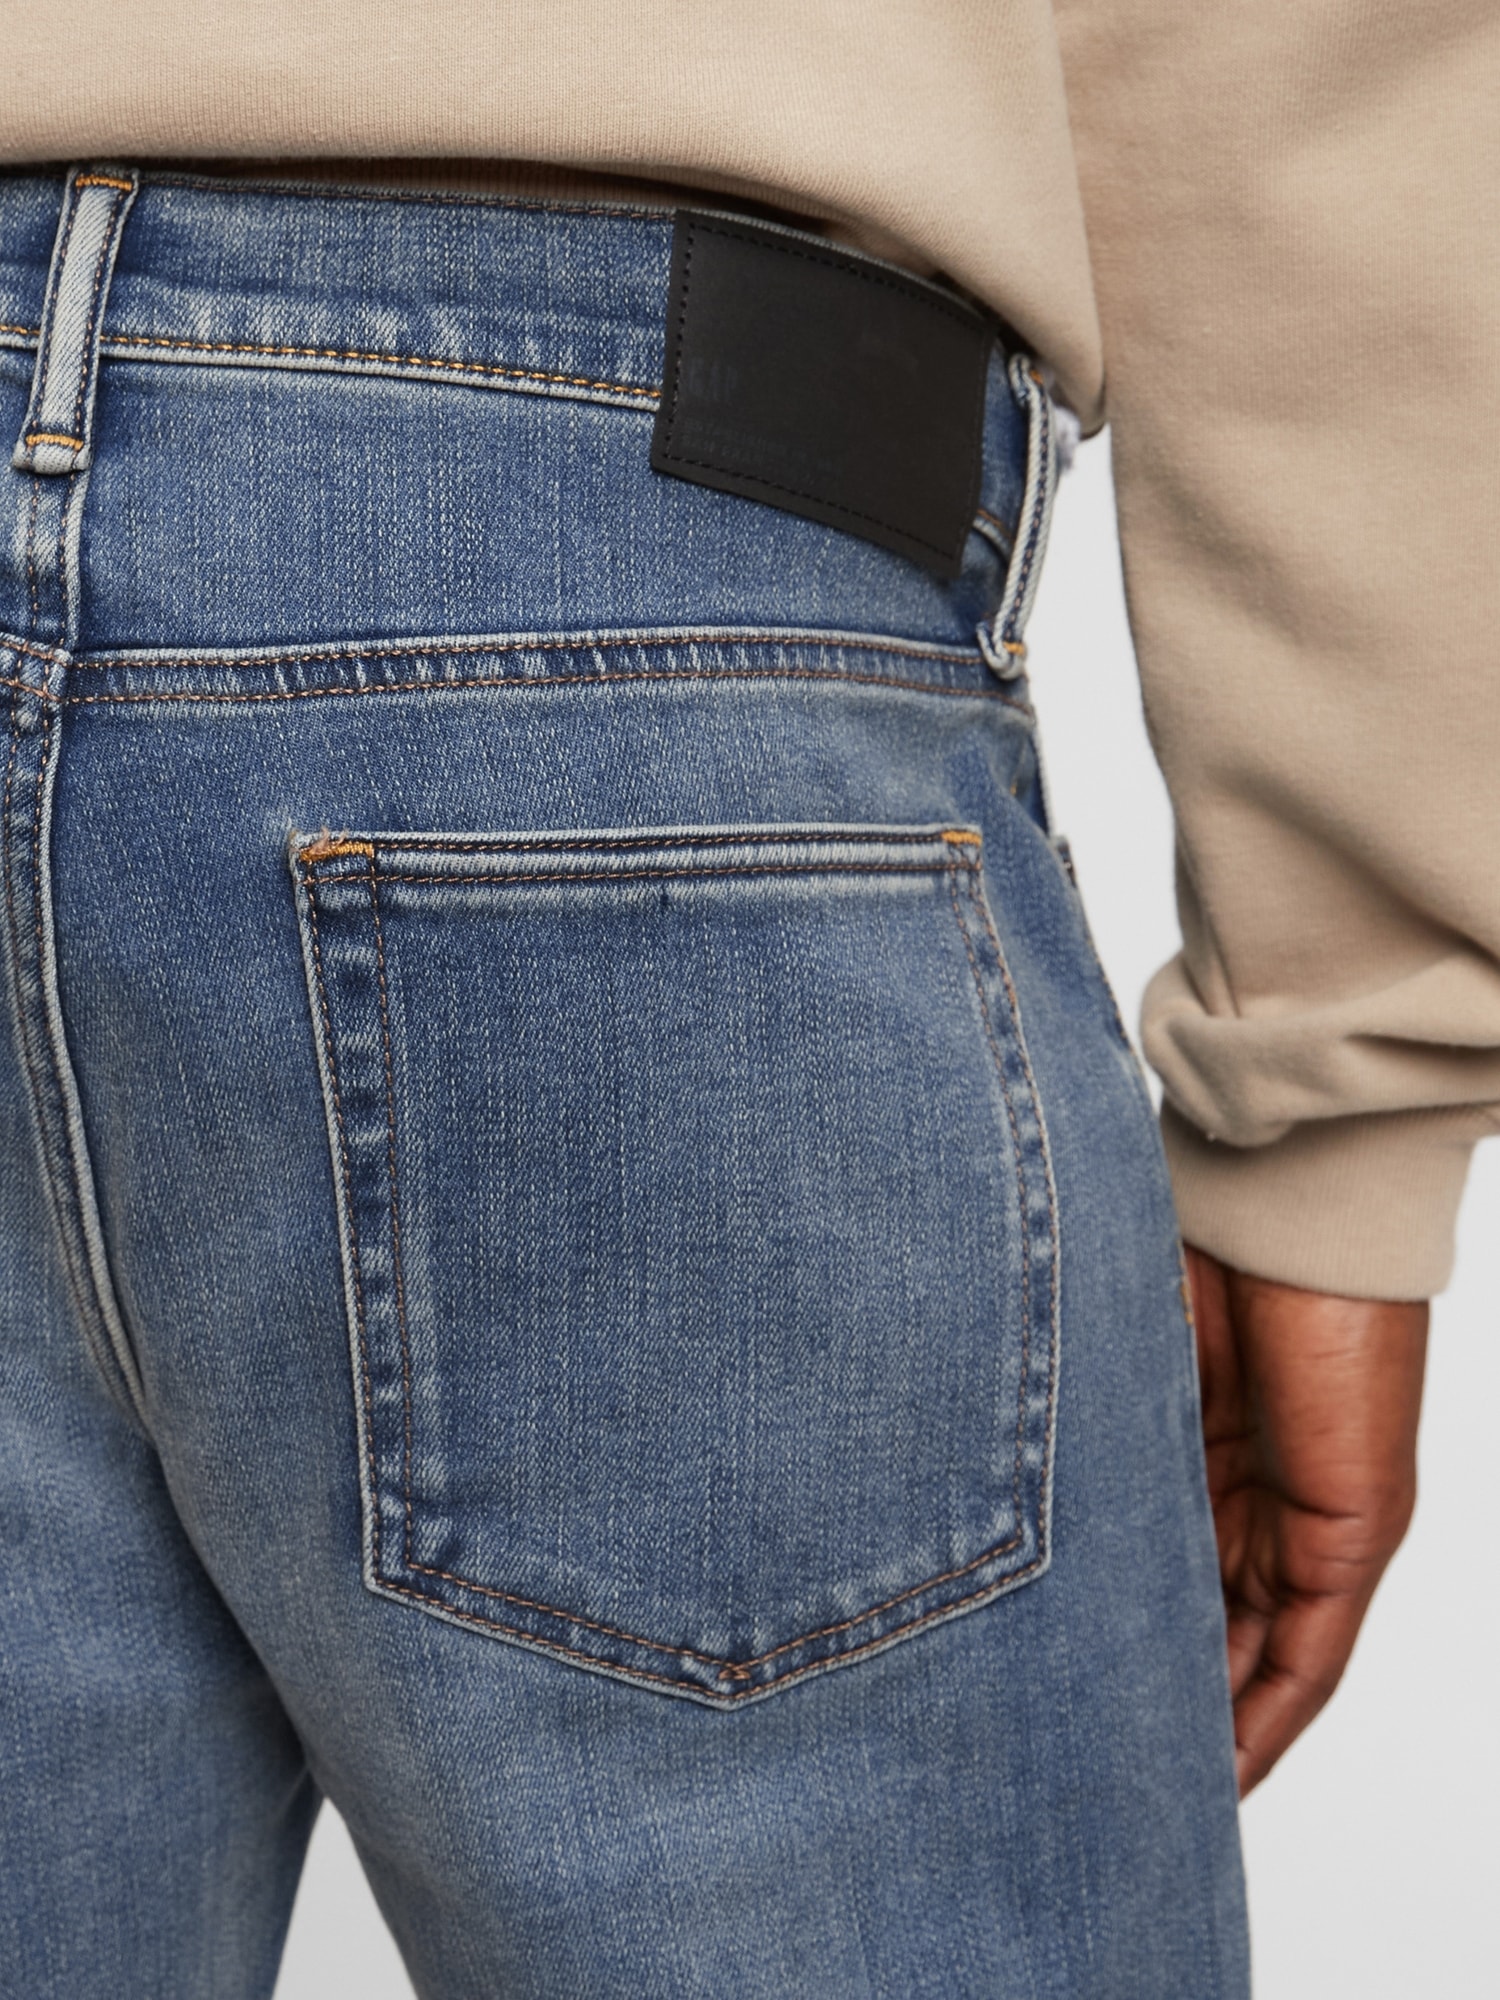 Soft Wear Slim Jeans with Washwell | Gap